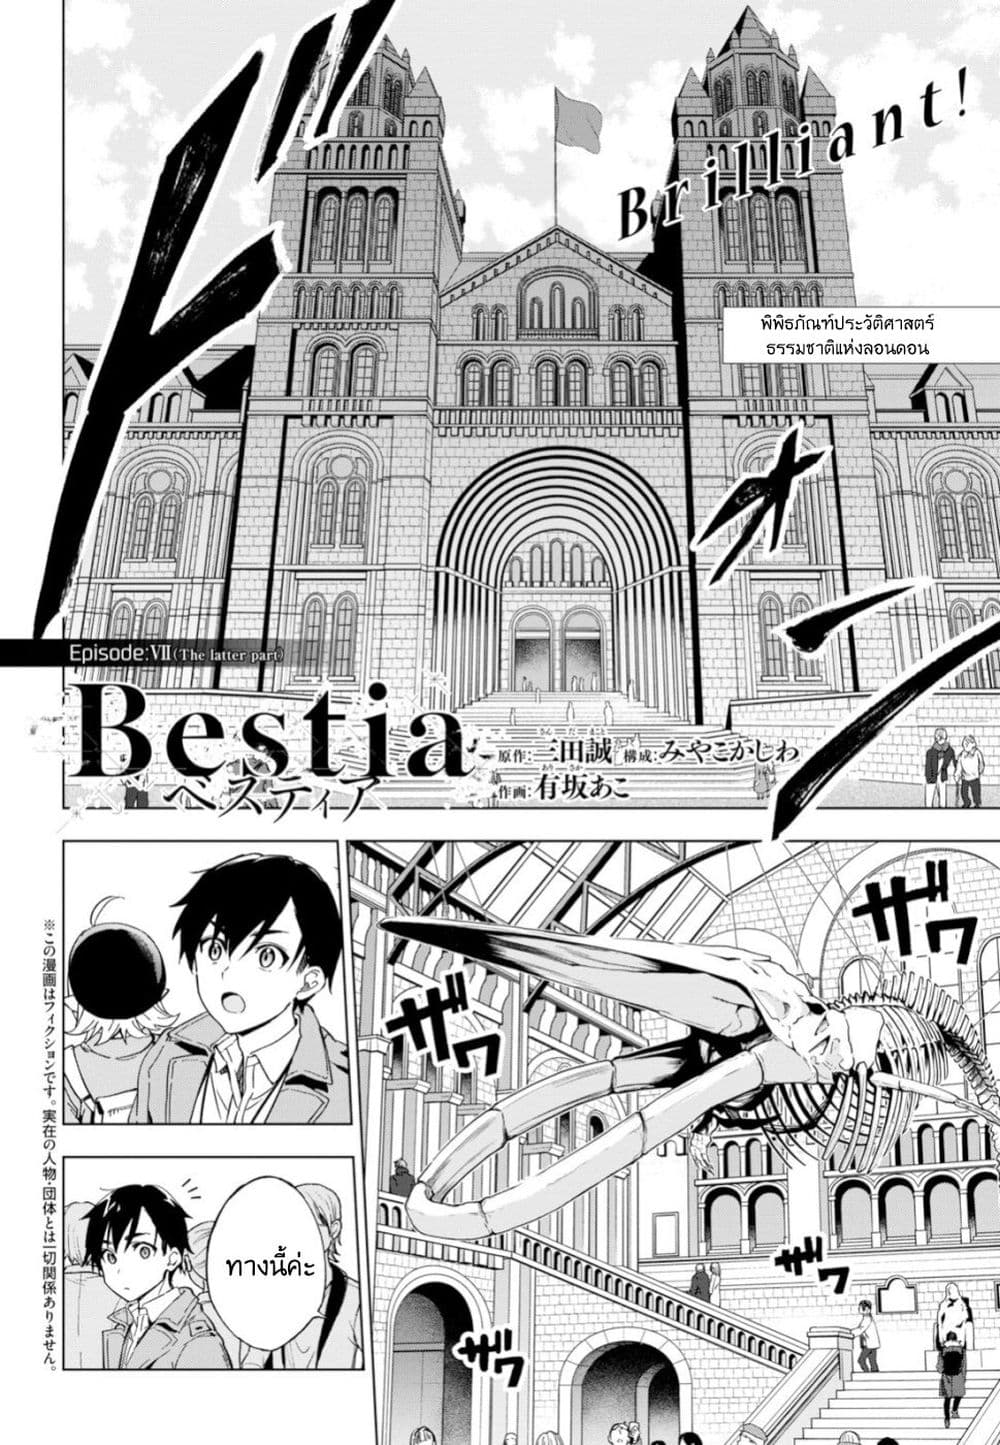 Bestia 7 (26)